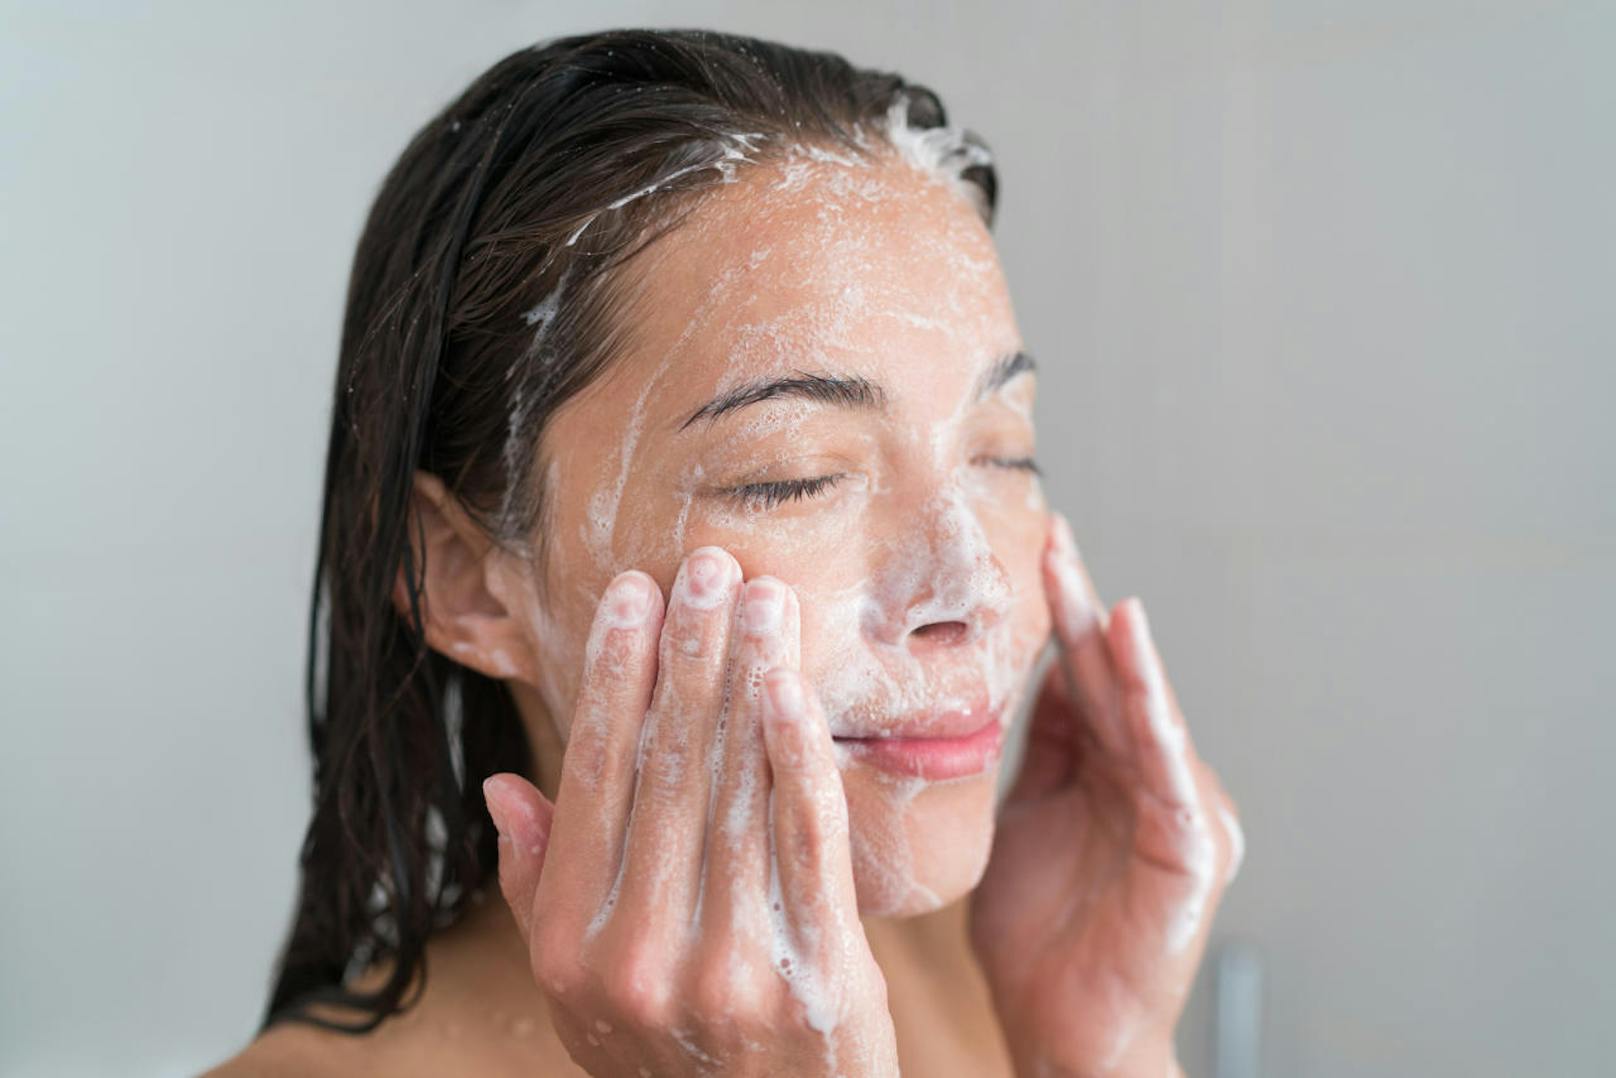 Die richtige Reinigung (saurer ph-Wert) ist wichtig, um die Haut nicht weiter zu belasten.